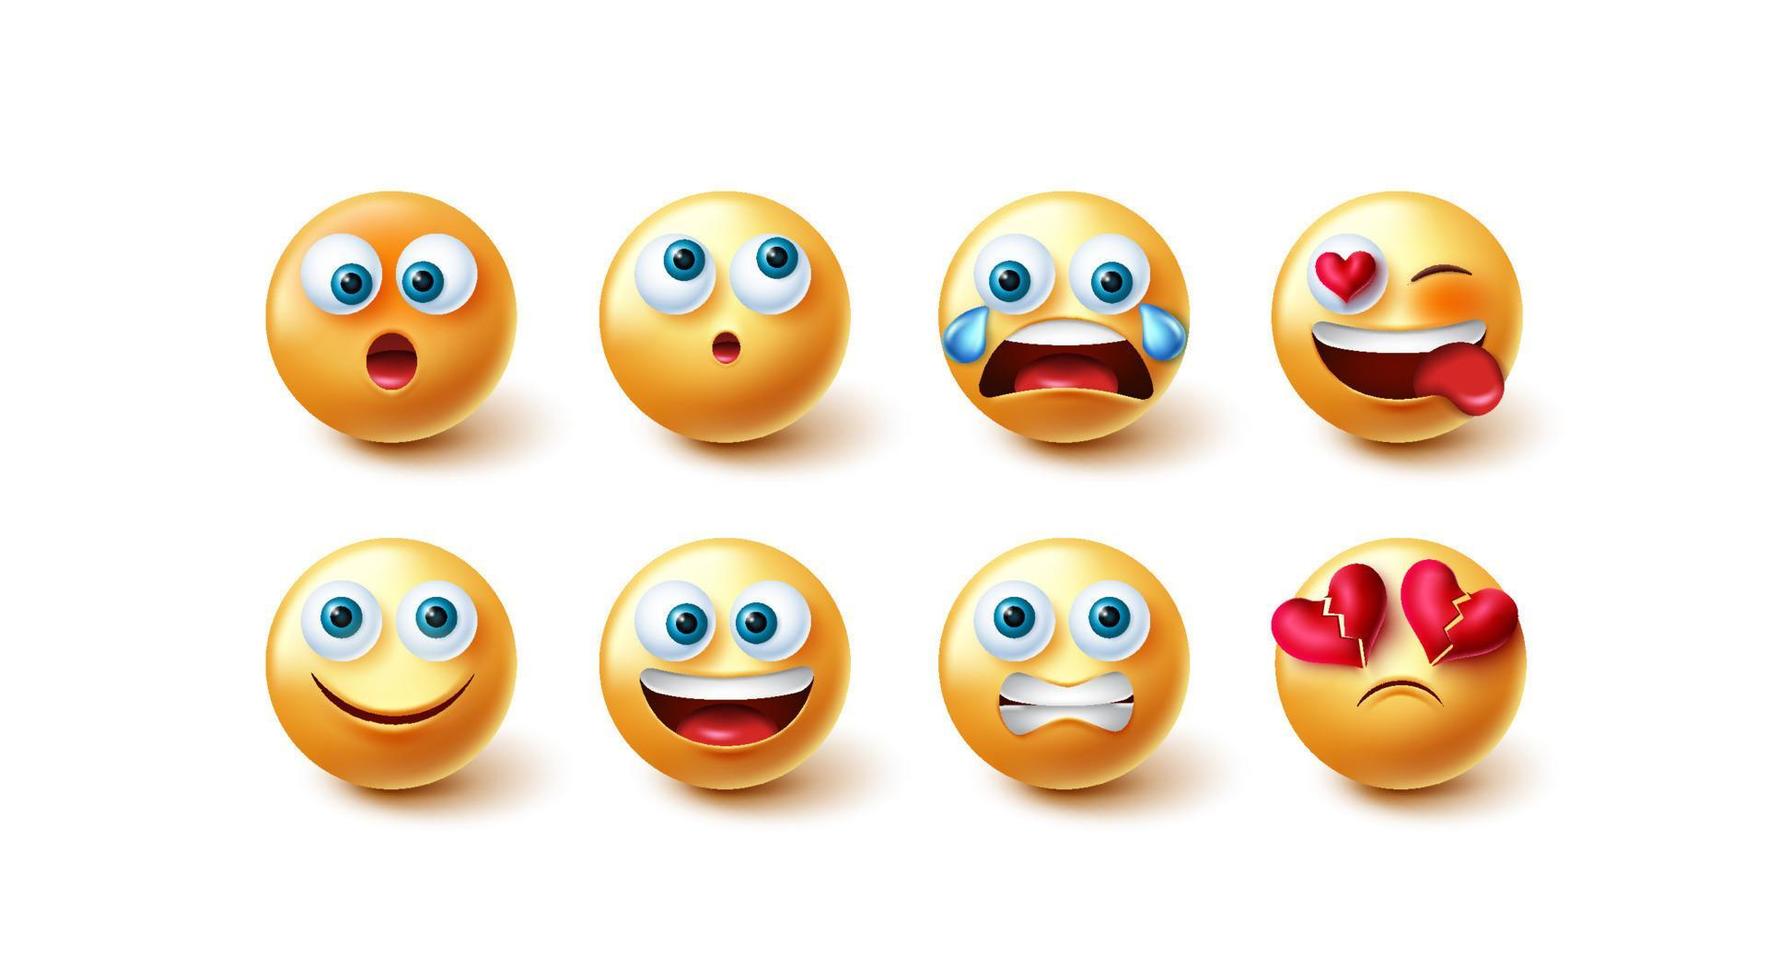 conjunto de vectores de emoticonos emoji. emojis personaje 3d en expresiones faciales felices y tristes aisladas en fondo blanco para la colección de diseño gráfico de caras amarillas lindas. ilustración vectorial.